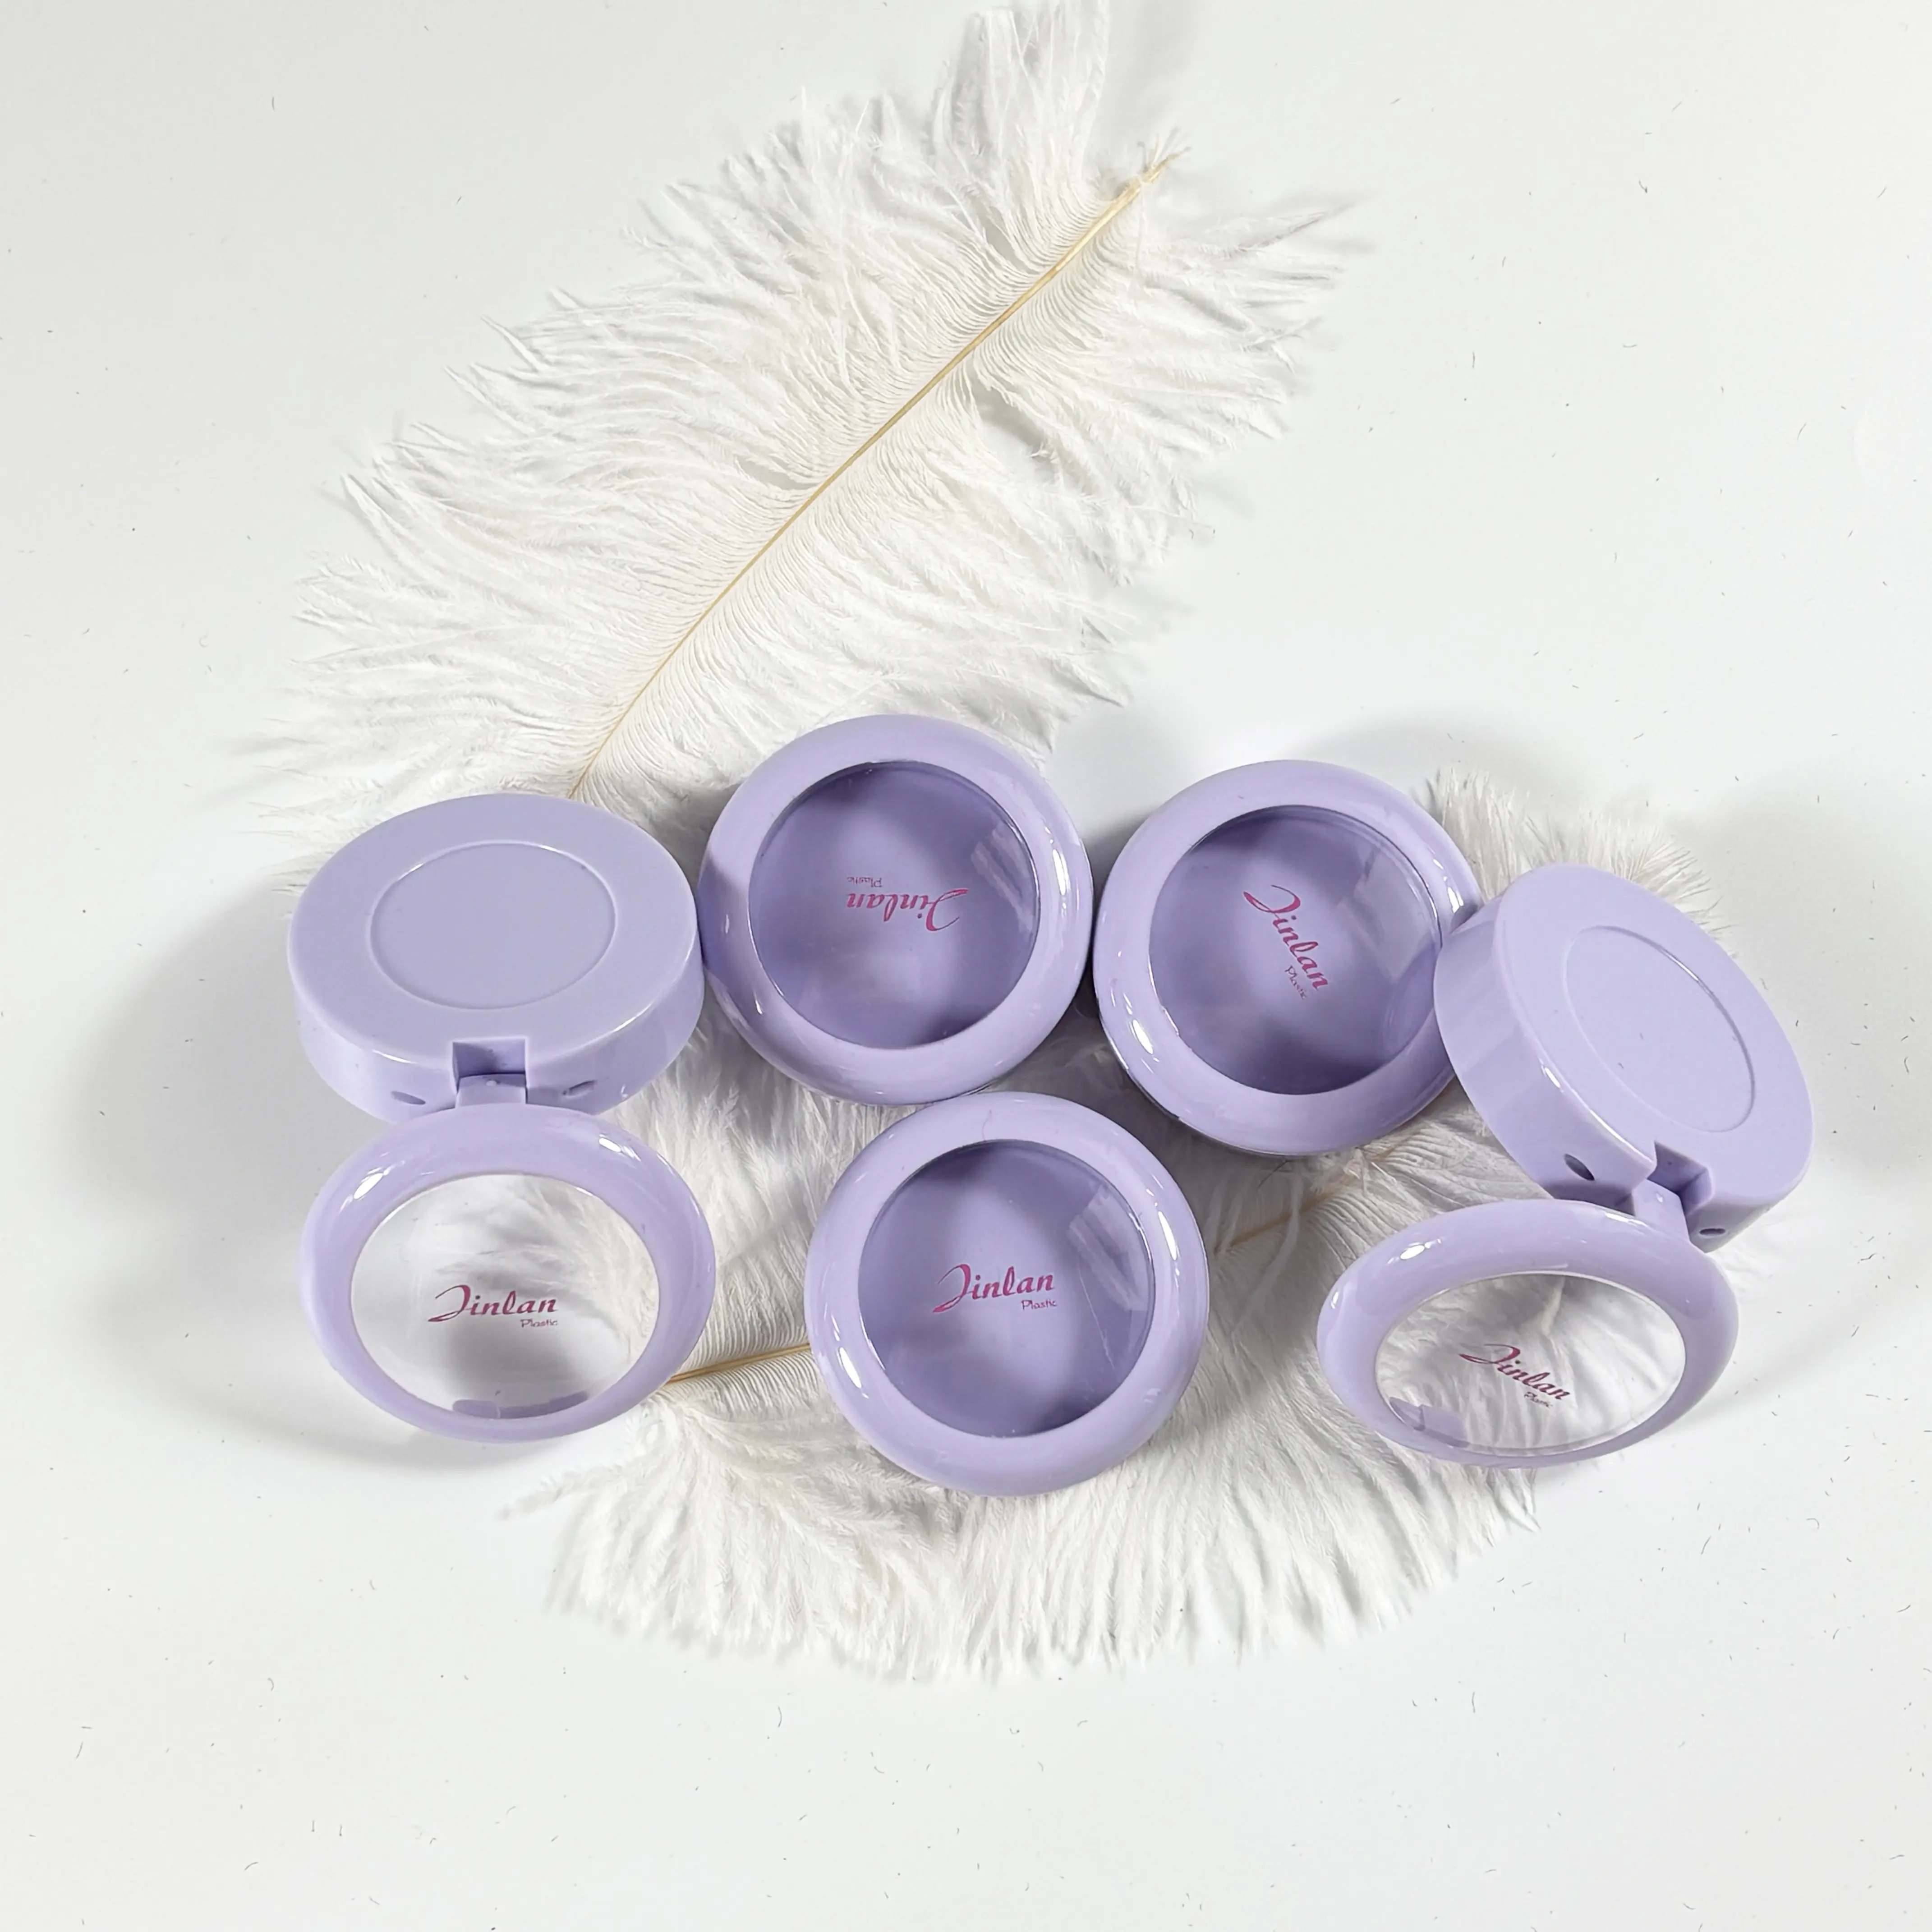 Jinlan Conteneur cosmétique vide compact en plastique Bouchon violet Boîte de poudre libre compacte et portable pour maquillage